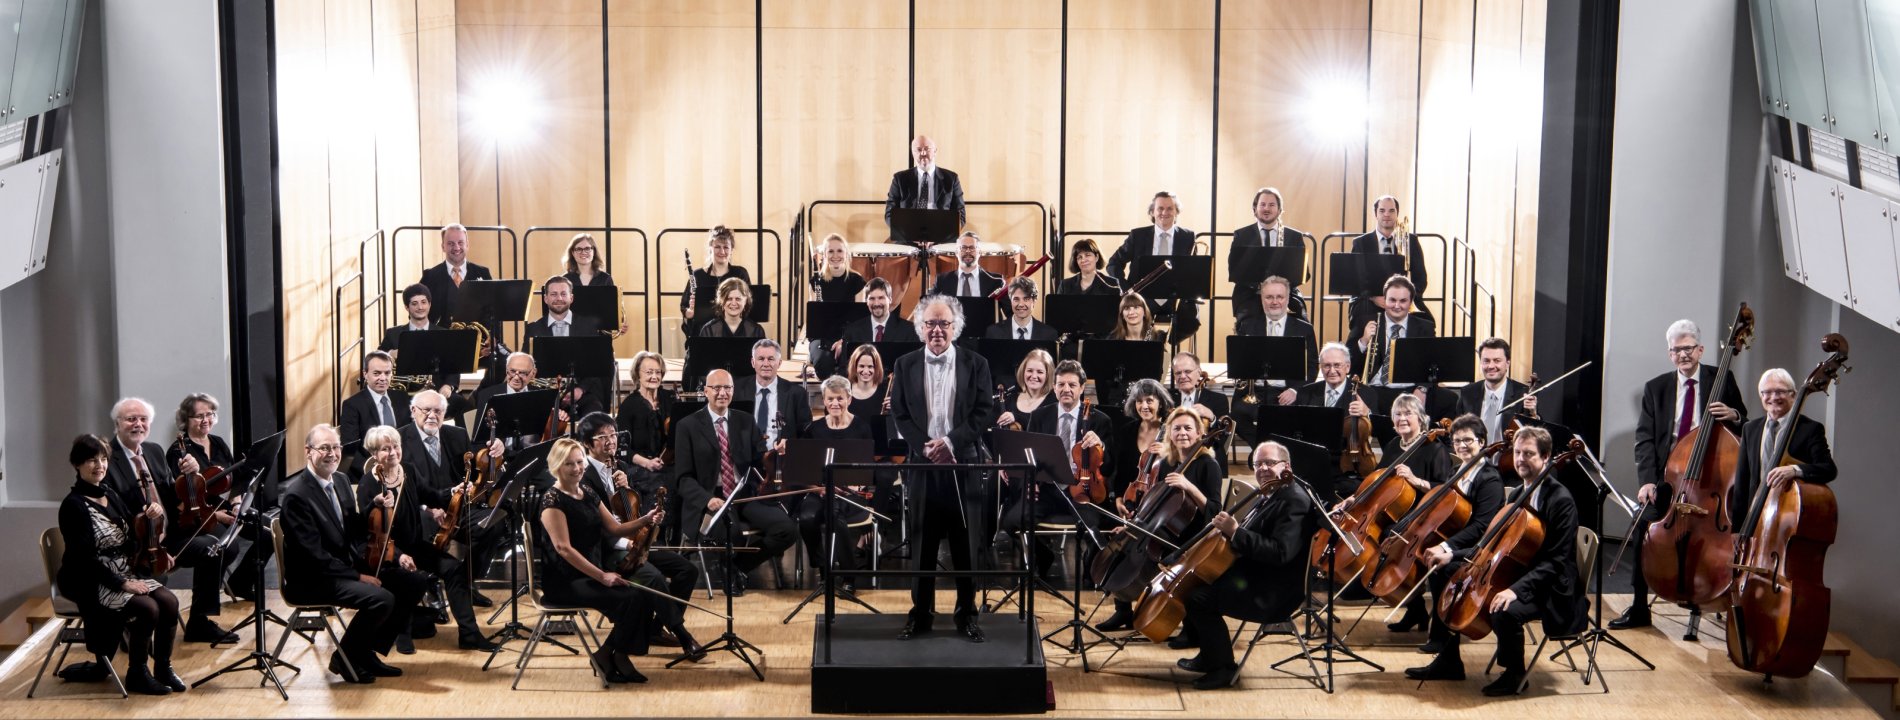 Events in Albstadt: Musikanten des Ebinger Kammerorchesters